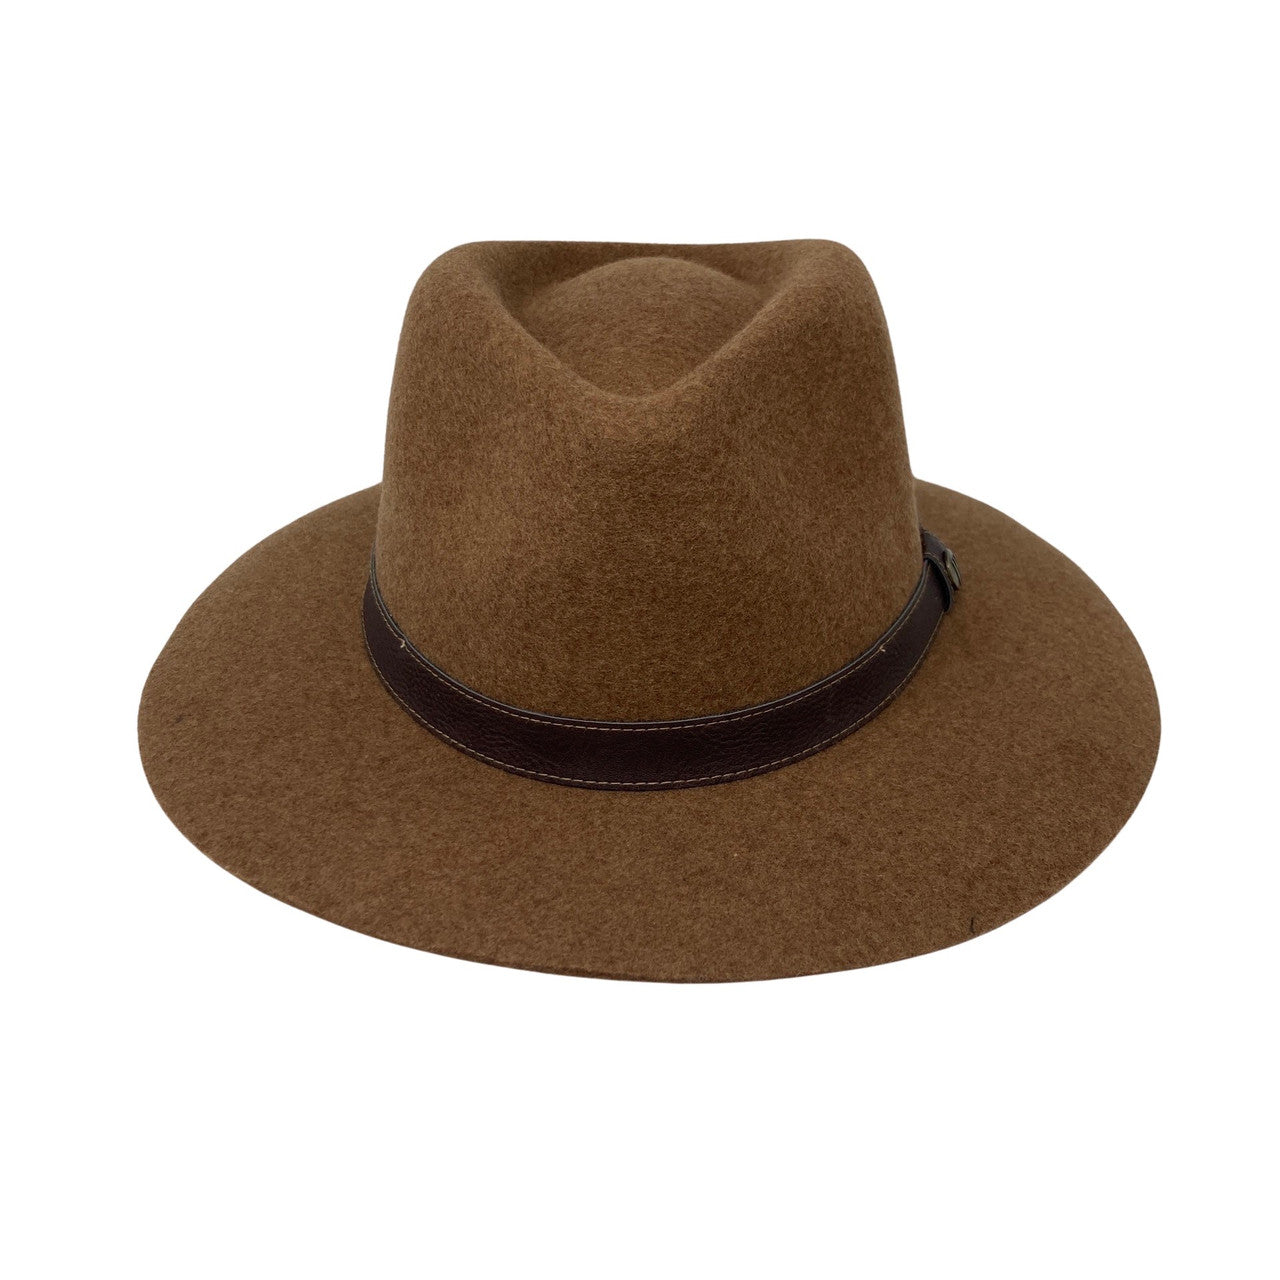 Wallaroo Hat Company Wool Felt Durango Fedora-brown front